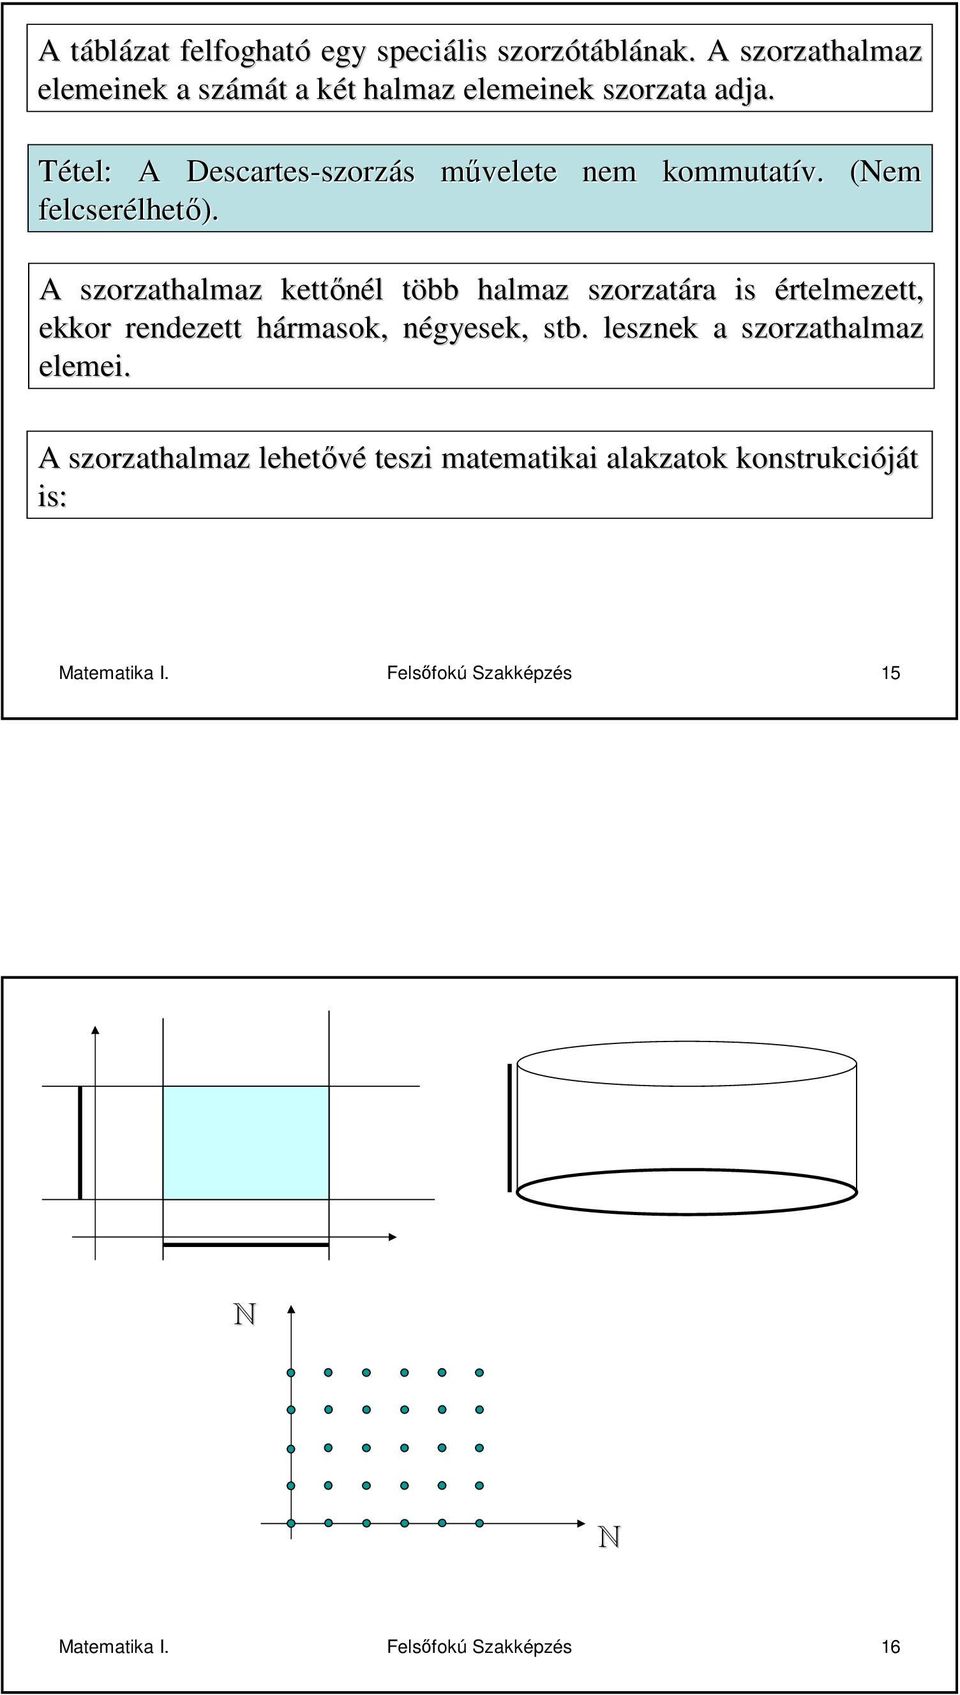 Matematika I. Mőszaki informatikai mérnm. rnökasszisztens. Galambos GáborG  JGYPK PDF Free Download